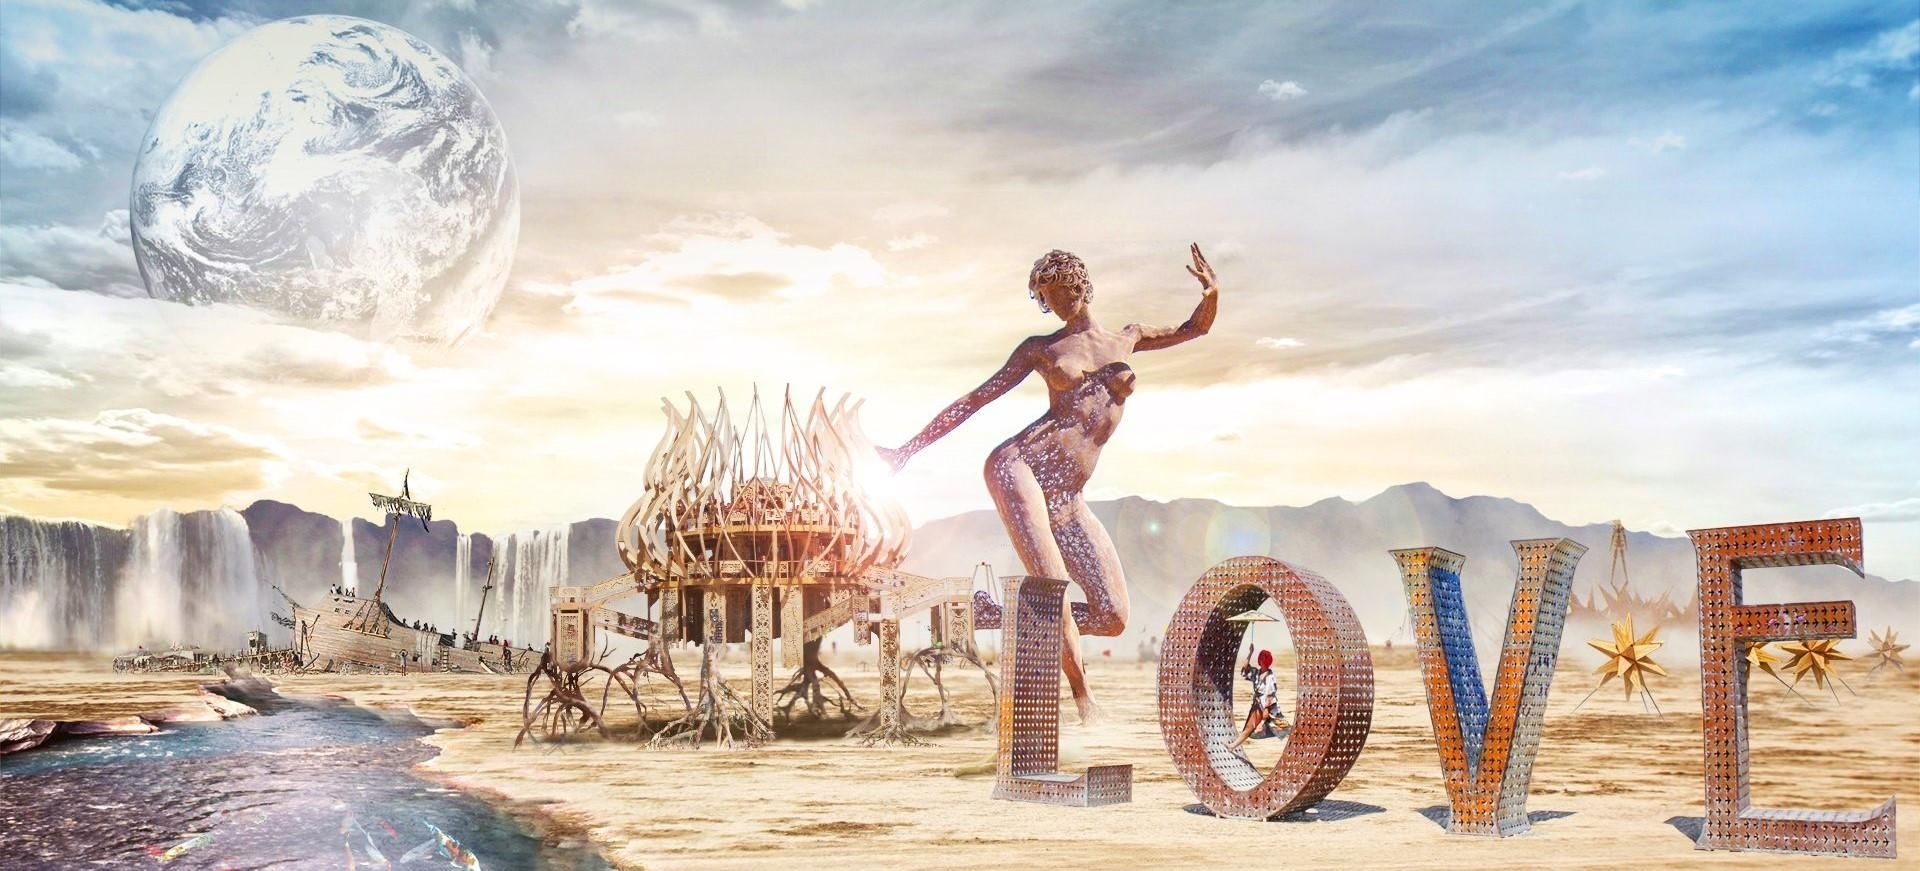 Фестиваль Burning Man 2019: 5 цікавих фактів про подію в пустелі